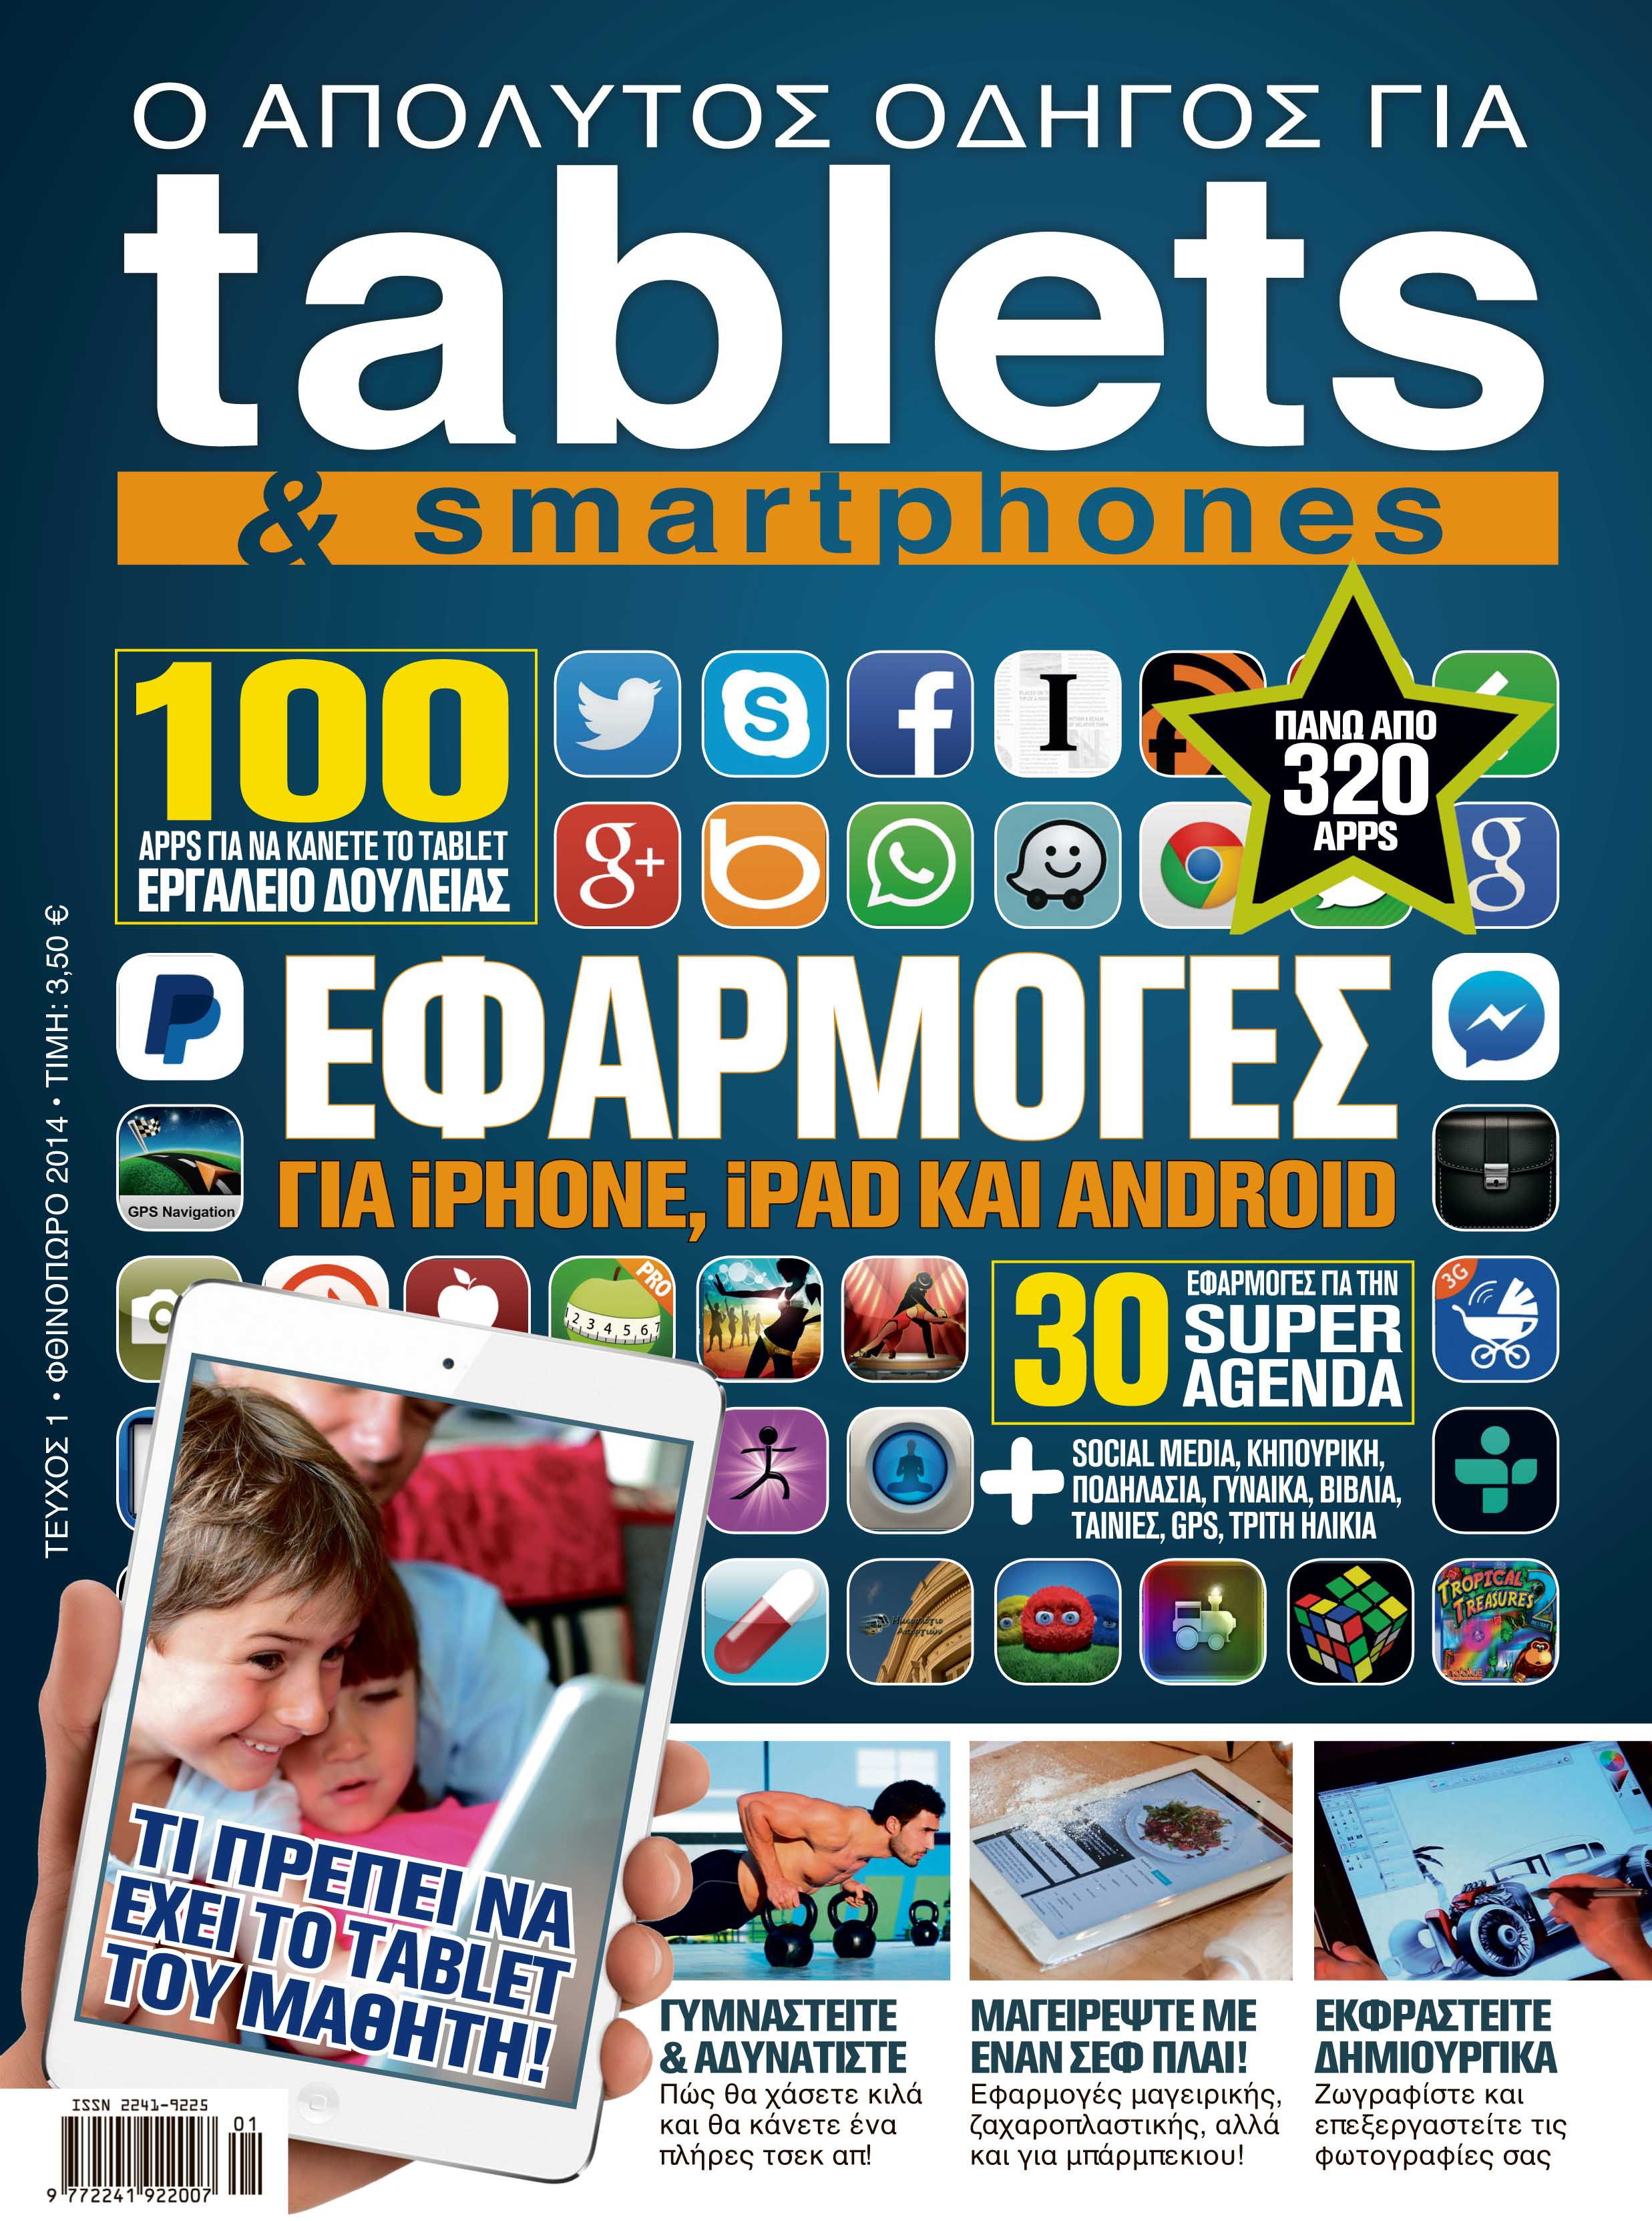 Νέο περιοδικό για tablets